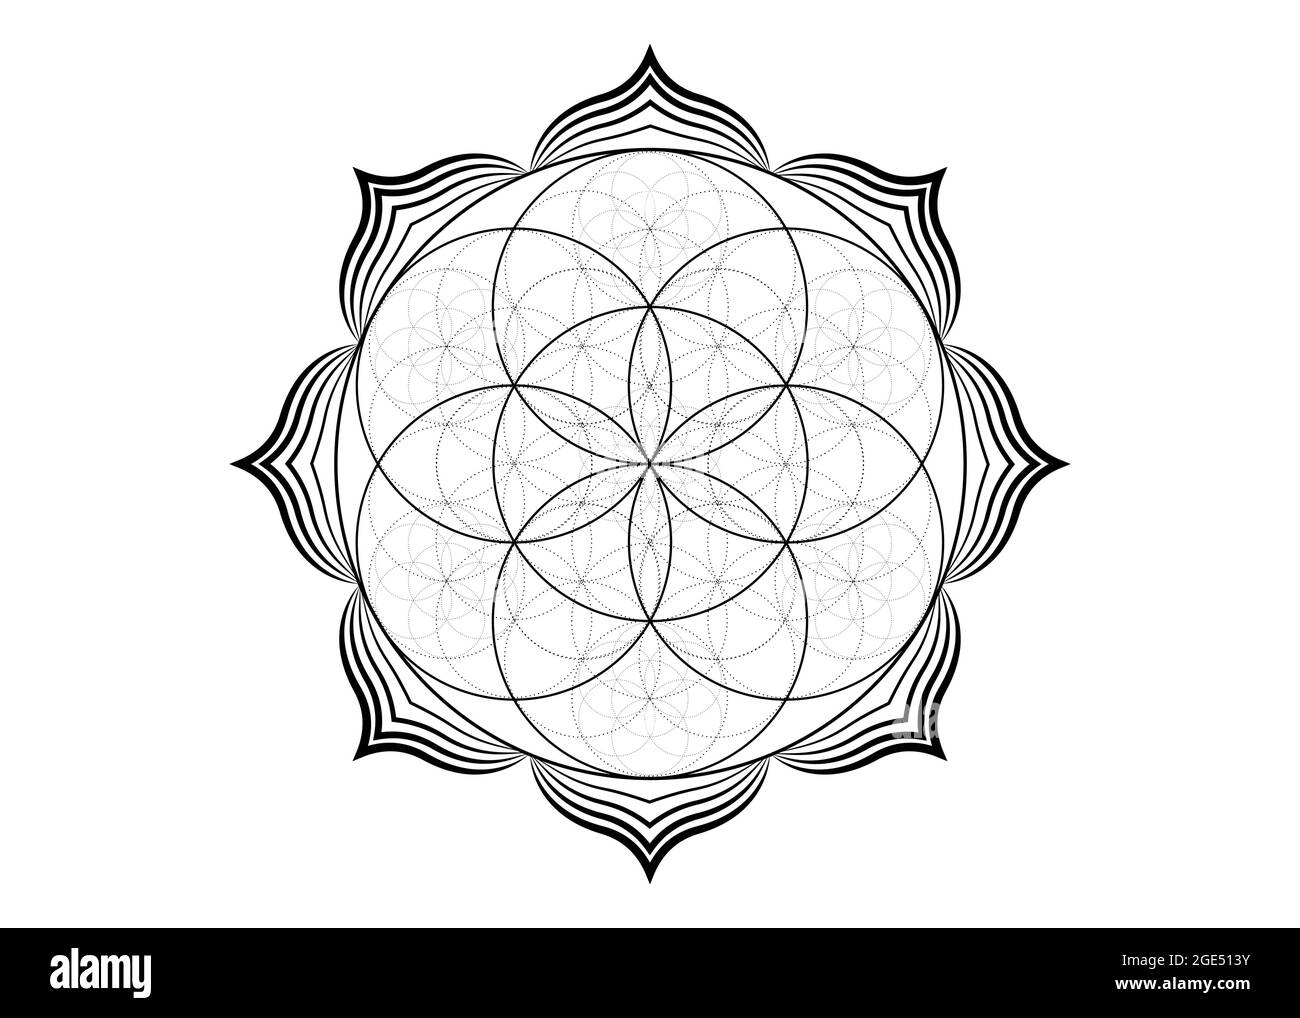 Seme fiore di vita icona di loto, yantra mandala geometria sacra, tatuaggio simbolo di armonia e di equilibrio. Talismano mistico, vettore di linee nere isolato Illustrazione Vettoriale